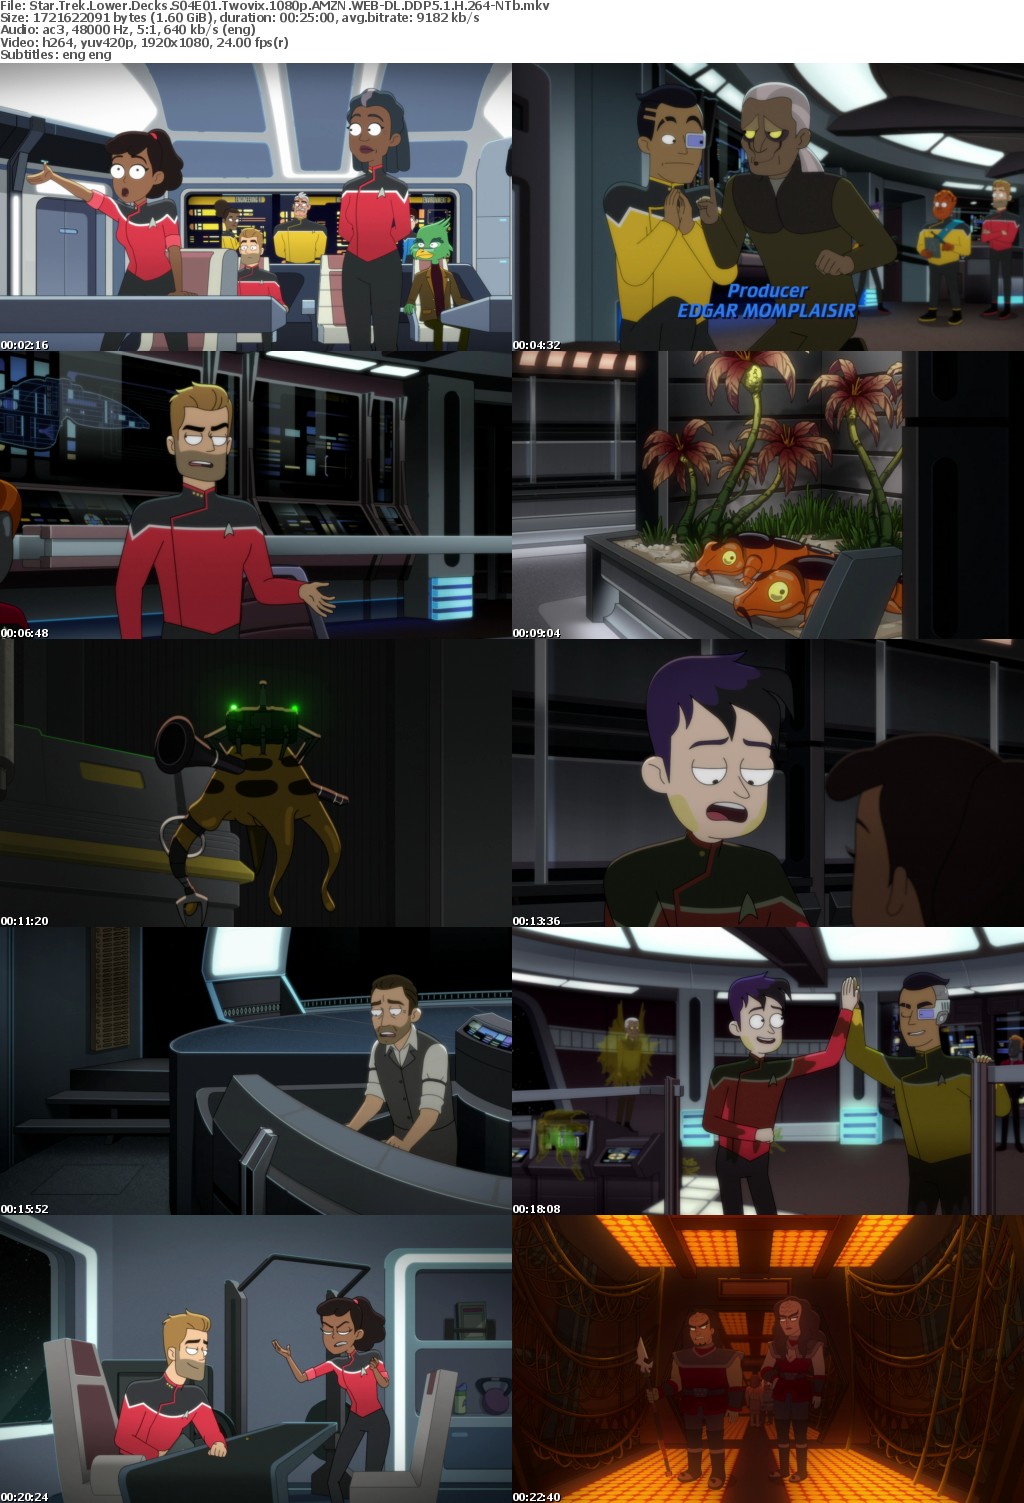 Star Trek Lower Decks S04E01 Twovix 1080p AMZN WEB-DL DDP5 1 H 264-NTb